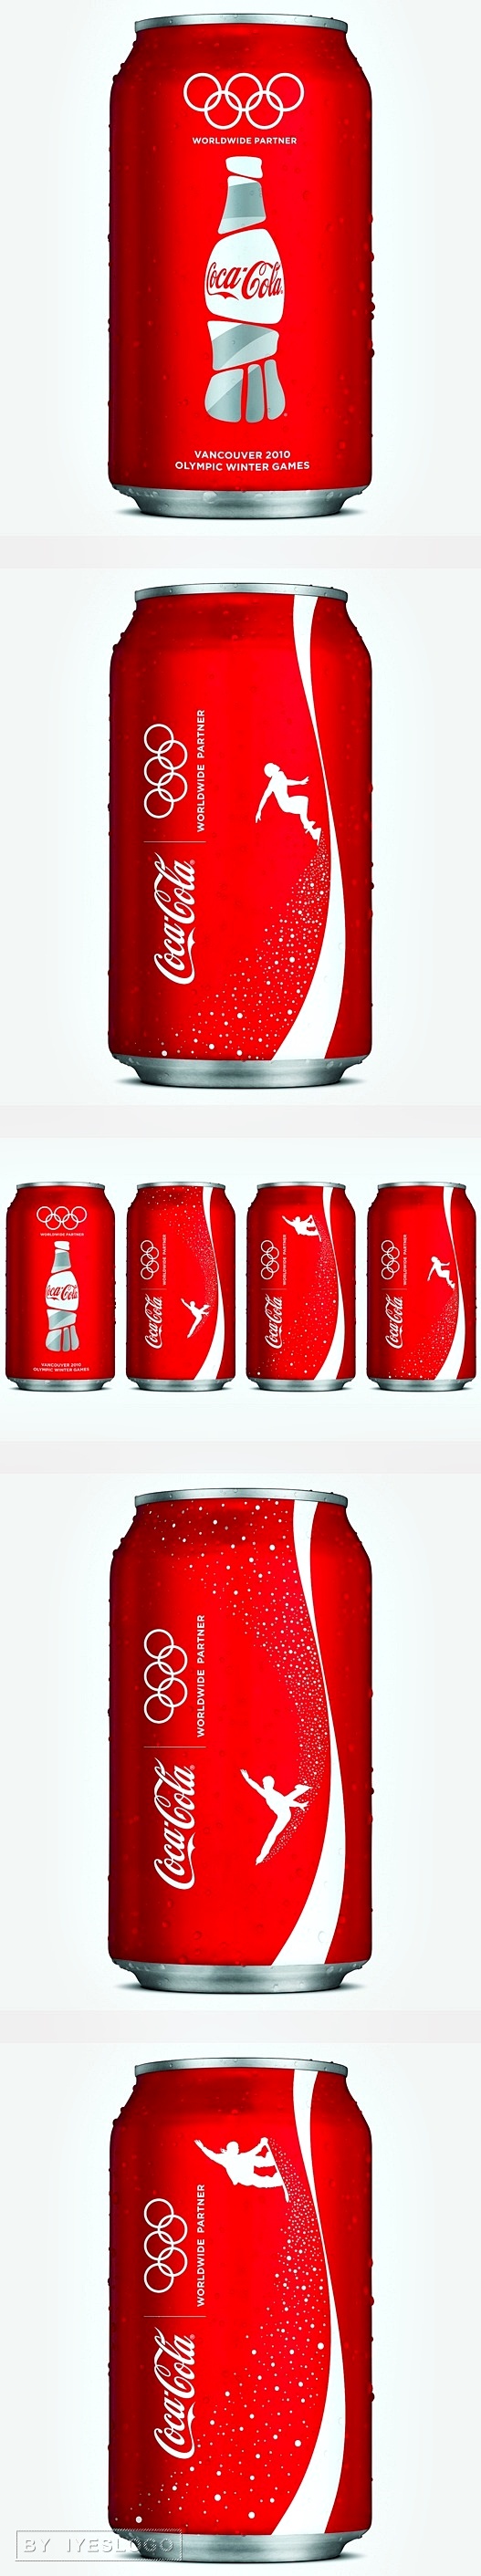 可口可乐2010年冬季奥林匹克运动会包装